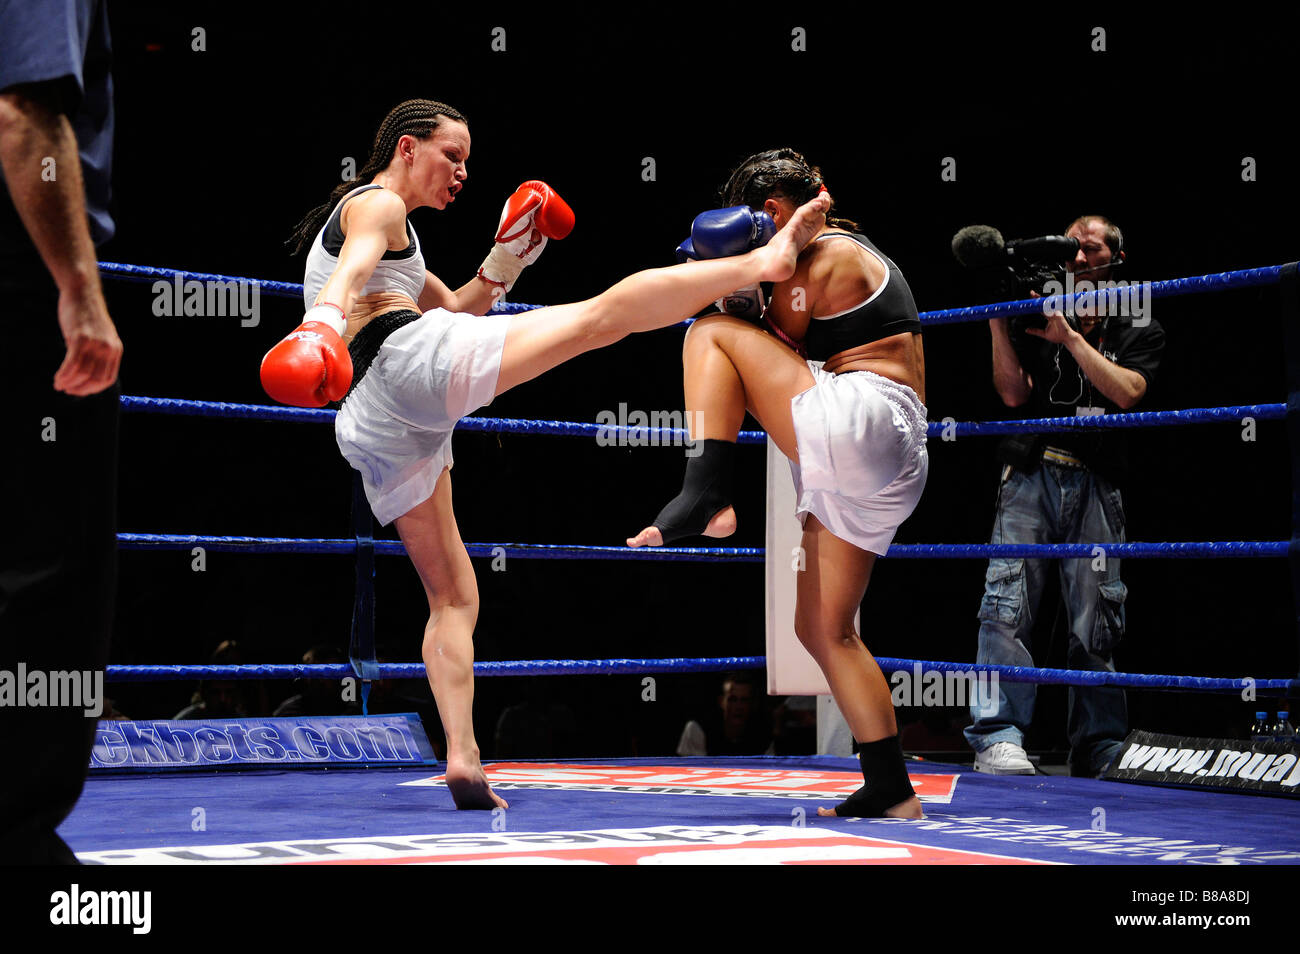 NOCHE DE KICK BOXING, 🚨YA EMPEZÓ🚨 Sigue con nosotros las peleas de Kick  boxing y Muay Thai #peleas #kickboxing #muaythai, By InternetvDeportes